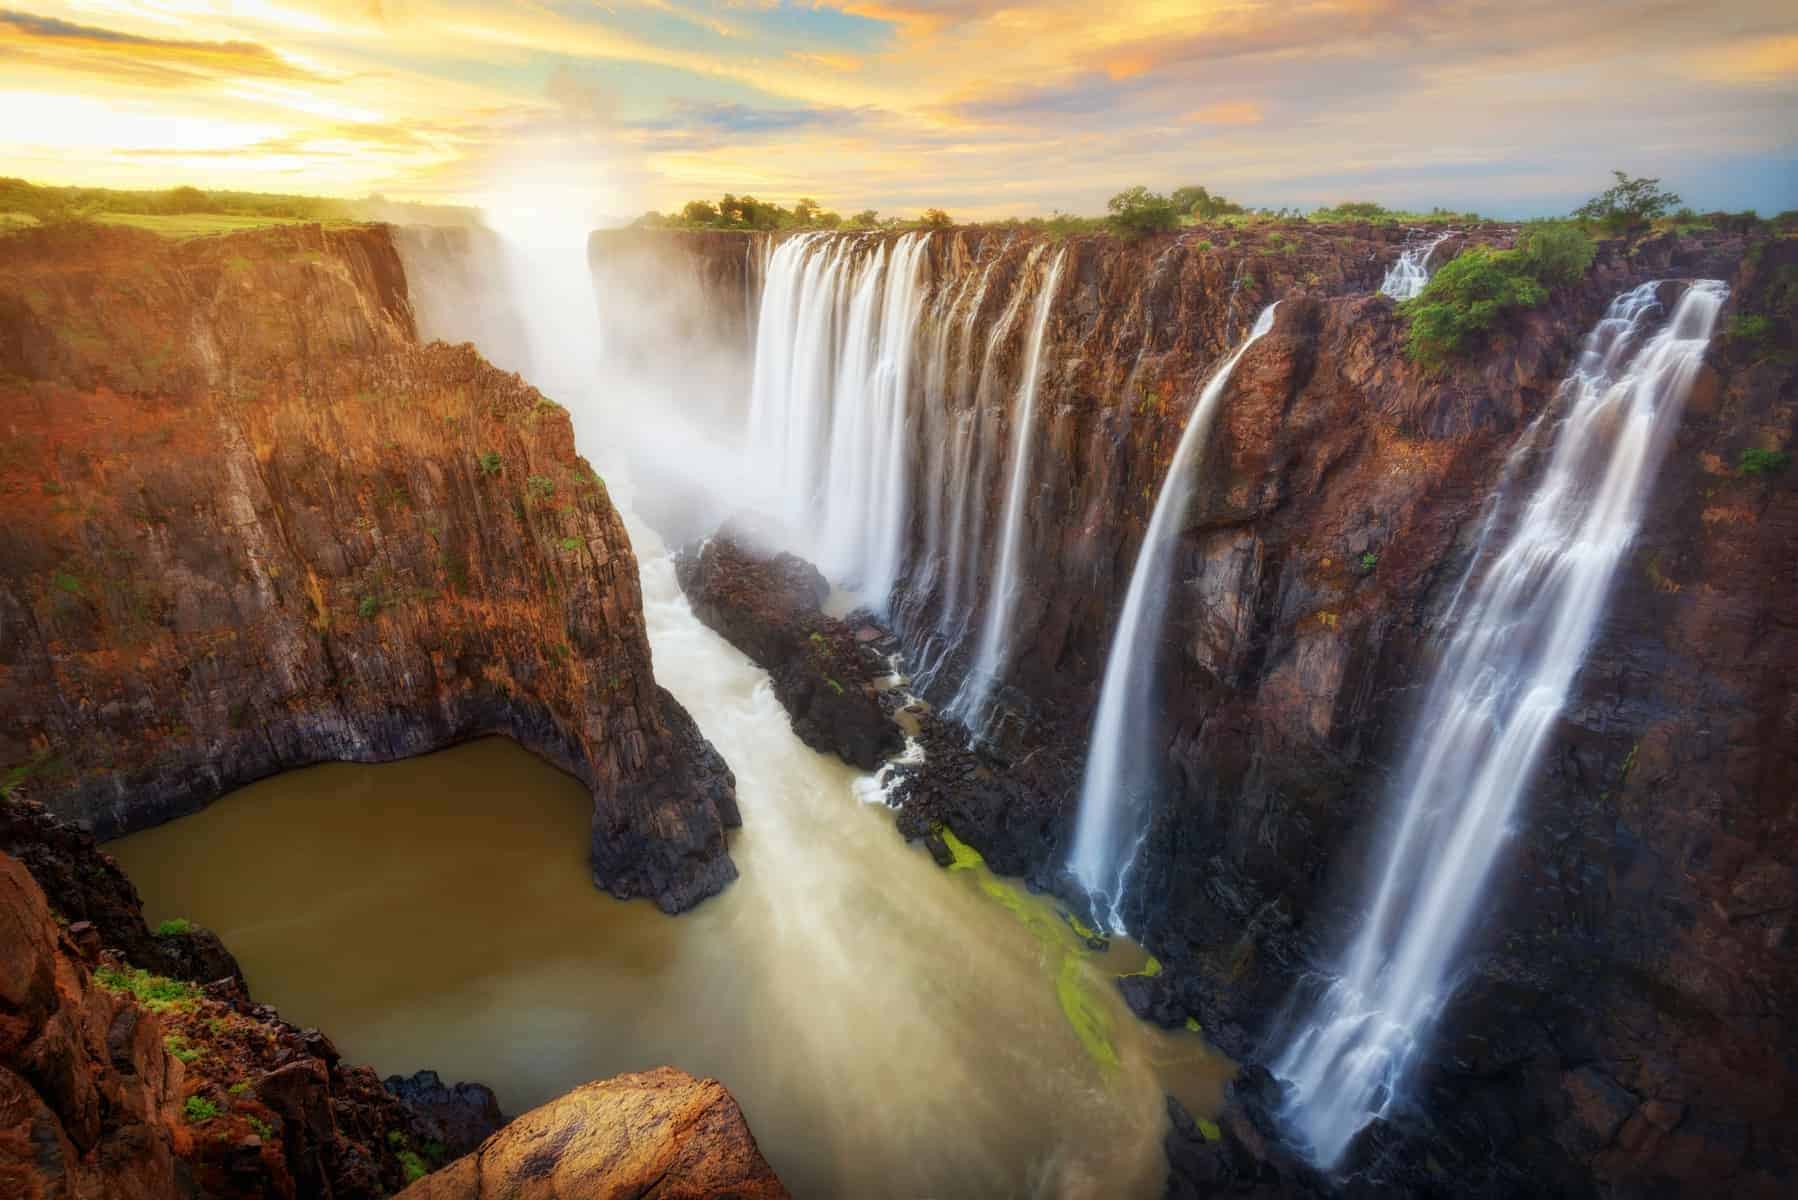 Victoria Falls i Zambia og Zimbabwe, enorme naturkræfter på spil